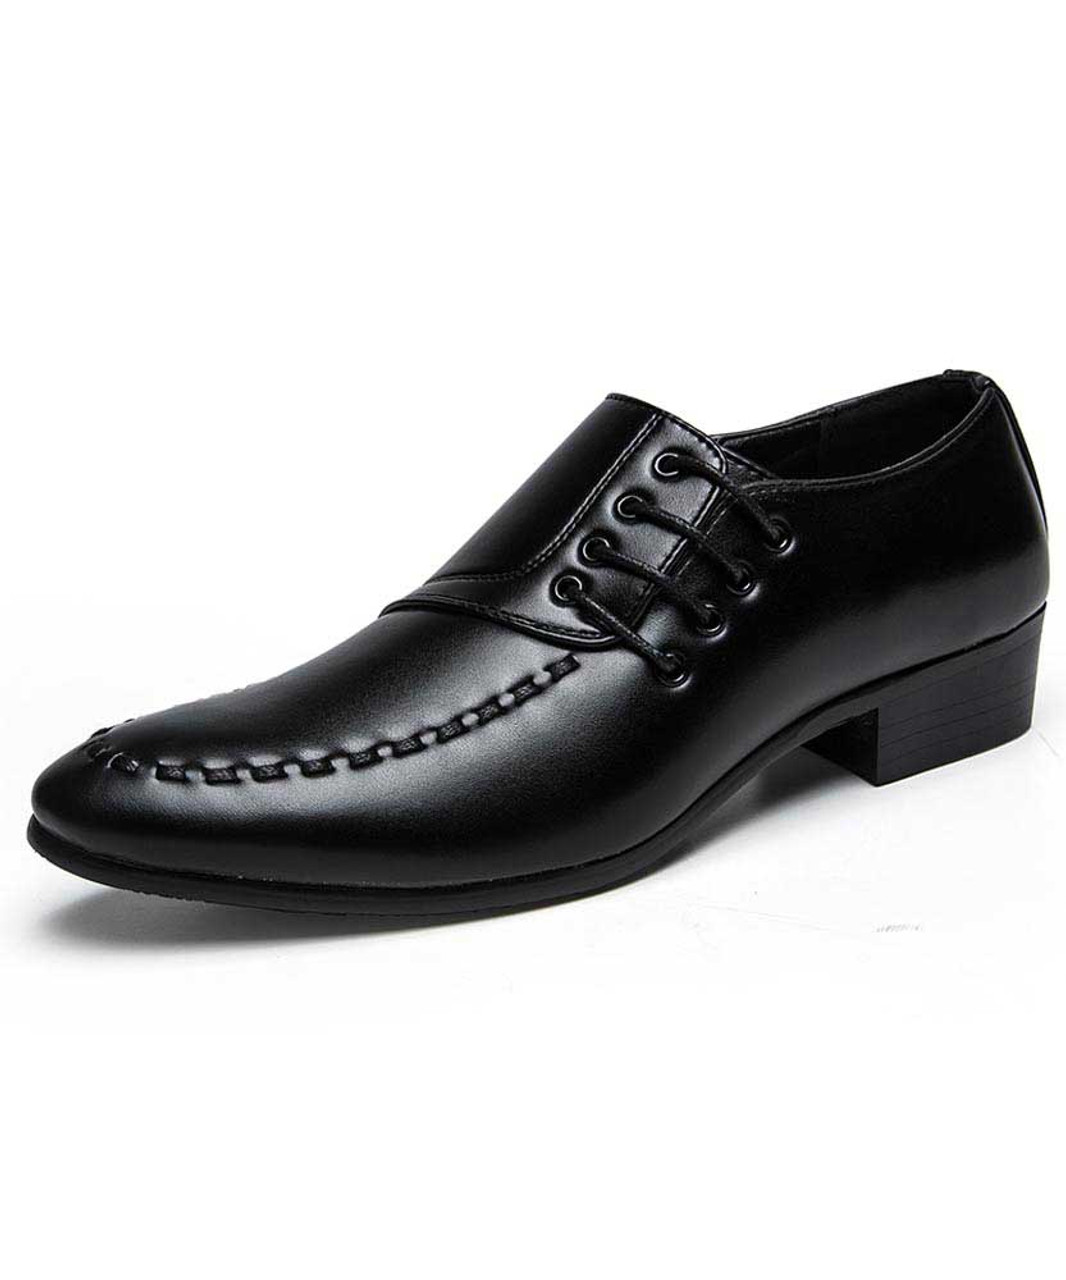 mens black lace up shoes